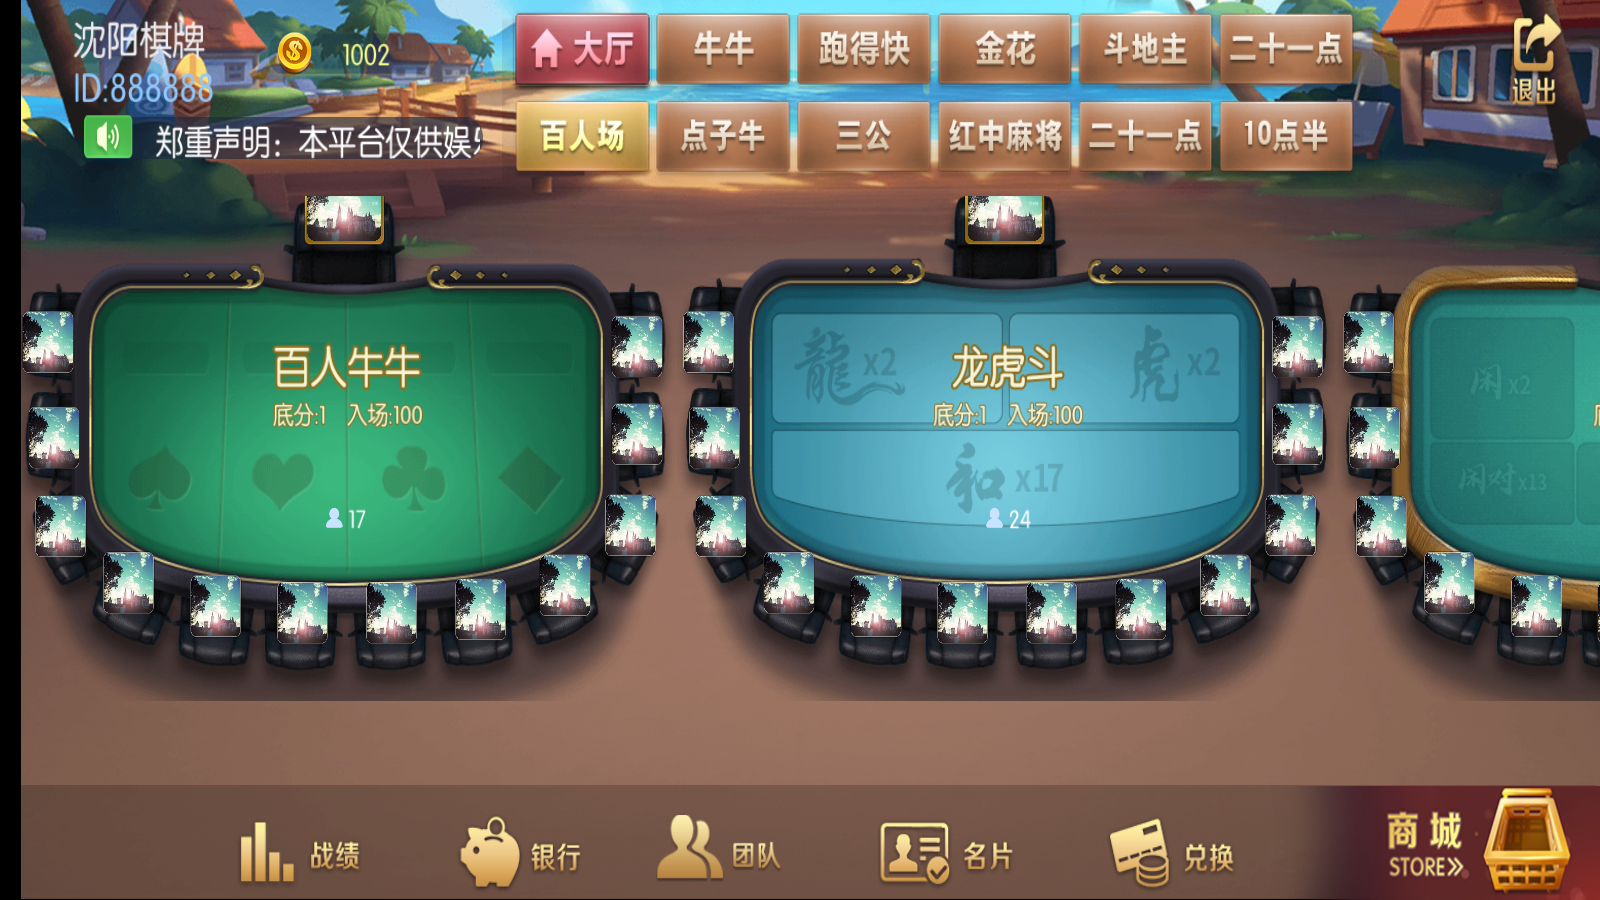 新版五游牛王+大联盟运营版棋牌组件 UI美观大方插图11